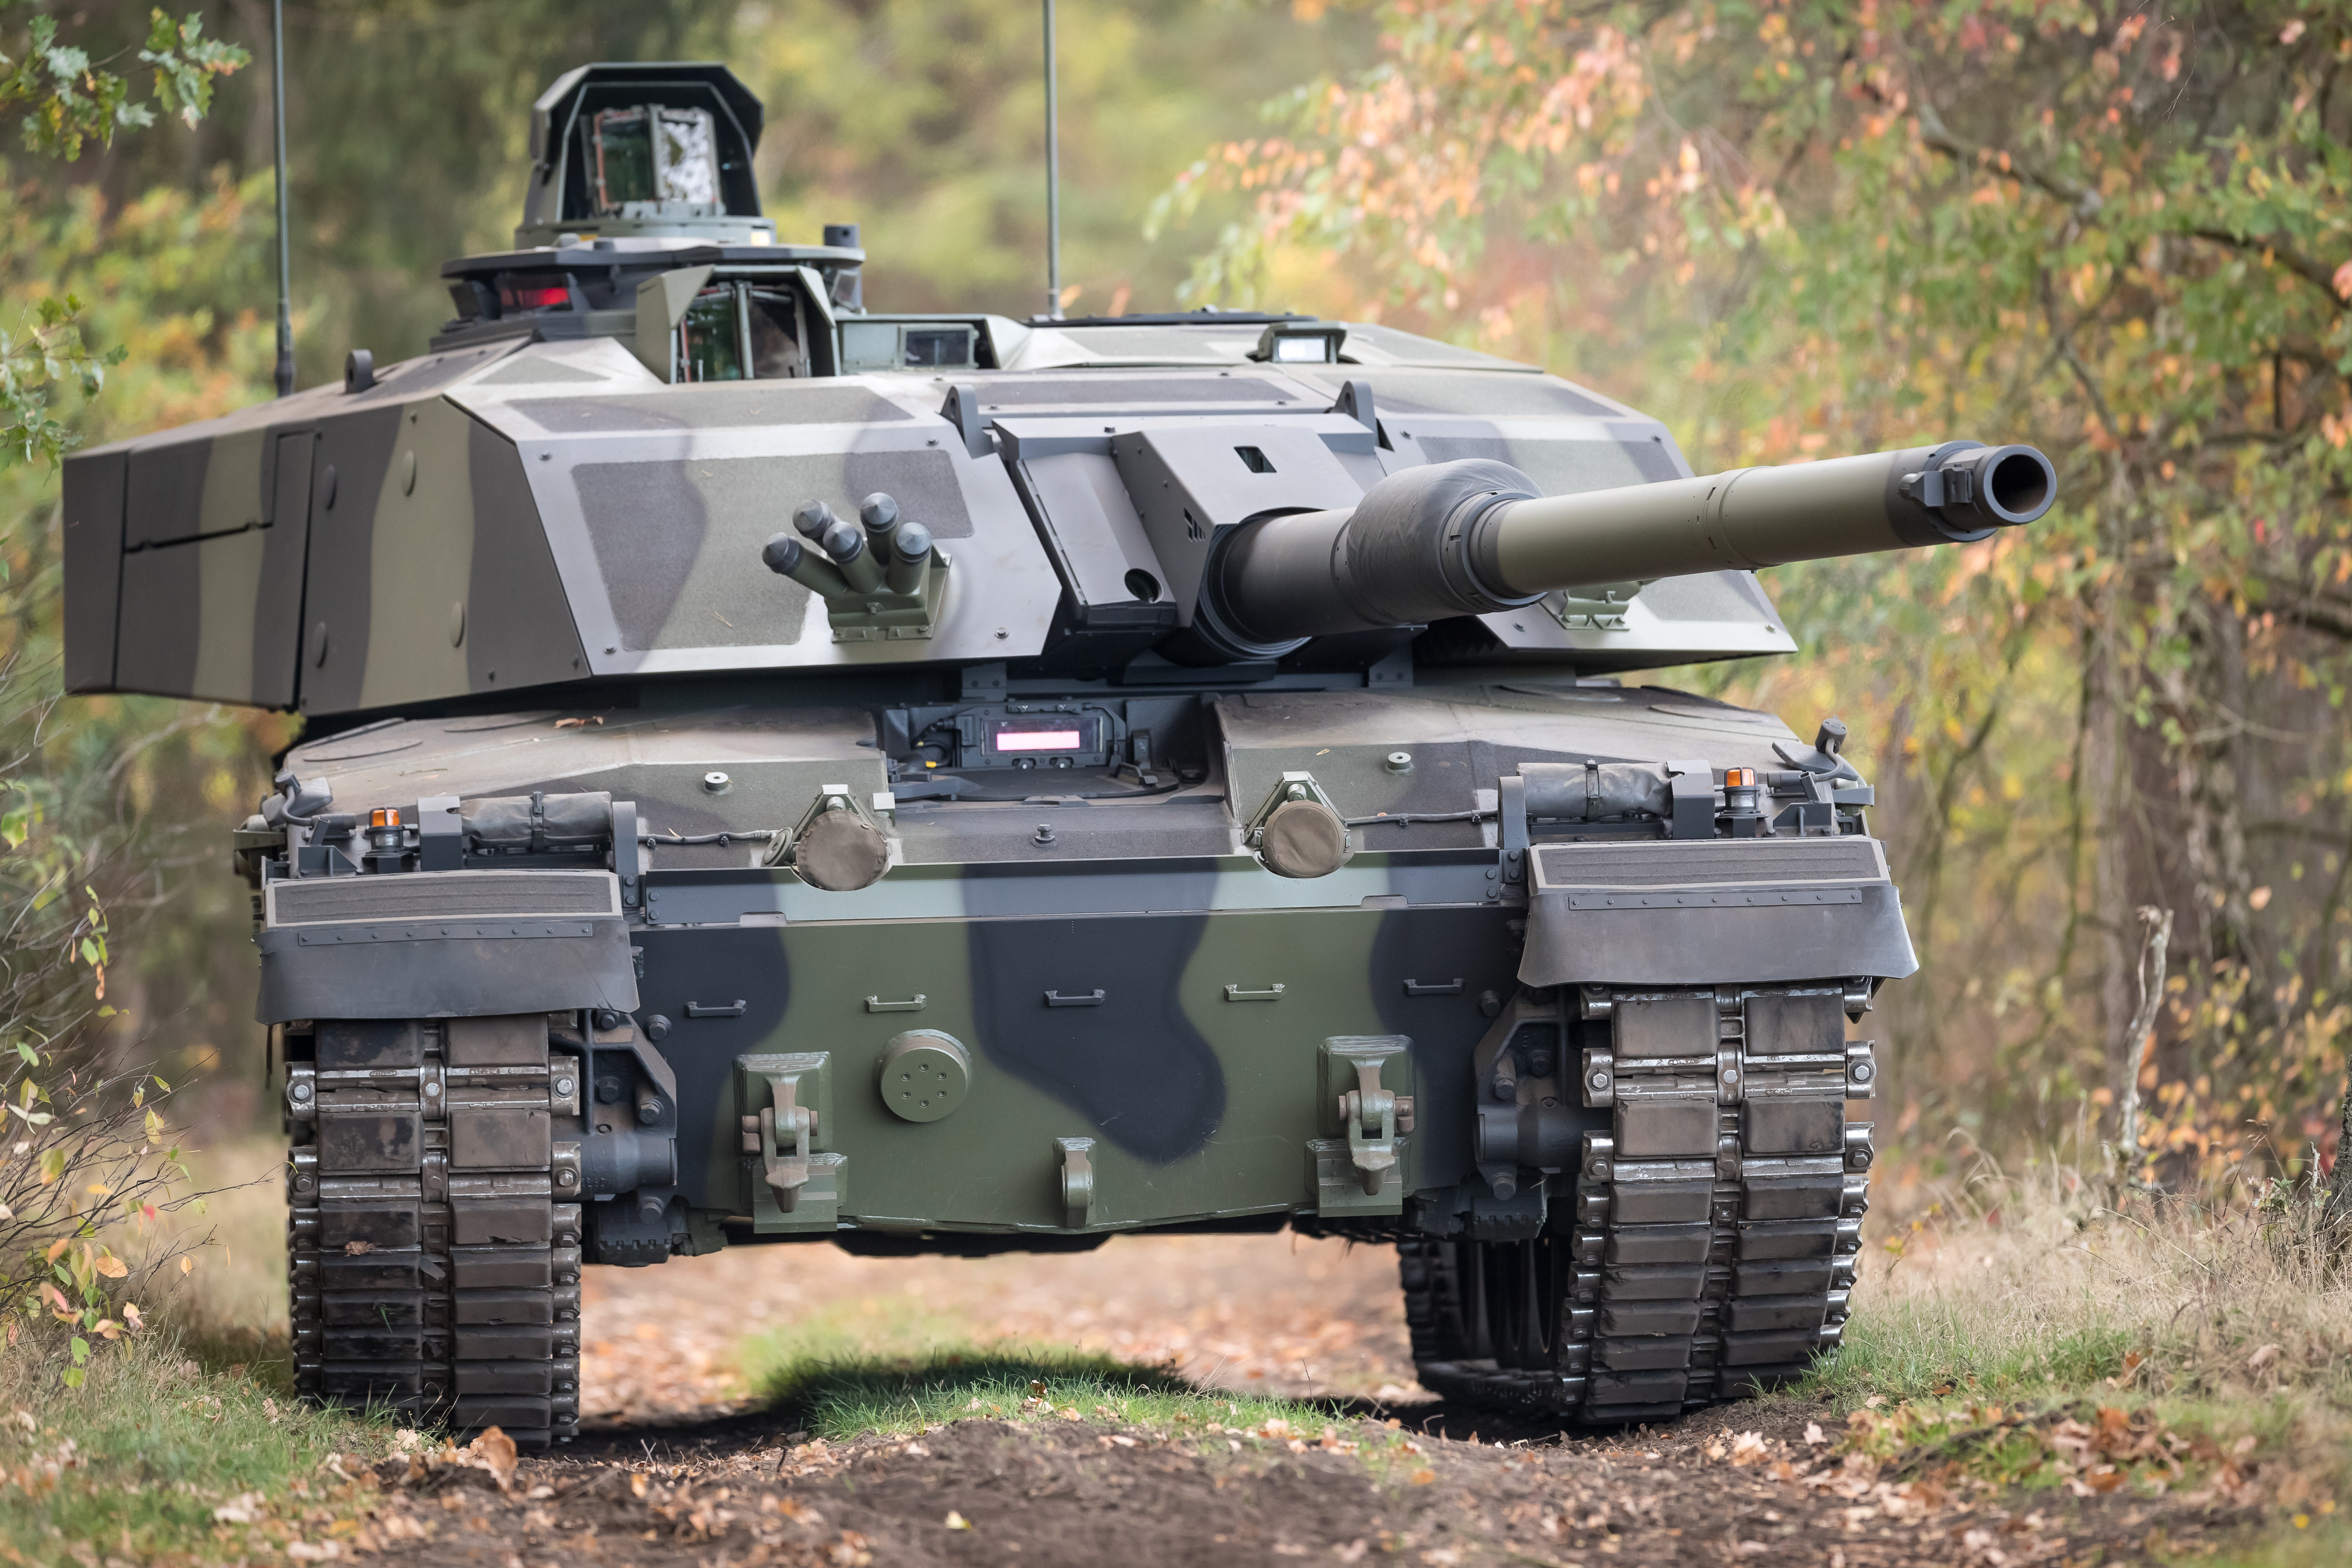 Wielka Brytania i RBSL uzgodniły ostateczną wersję głównego czołgu bojowego Challenger 3 - otrzyma on działo L55A1 120 mm, opancerzenie i ochronę aktywną Trophy